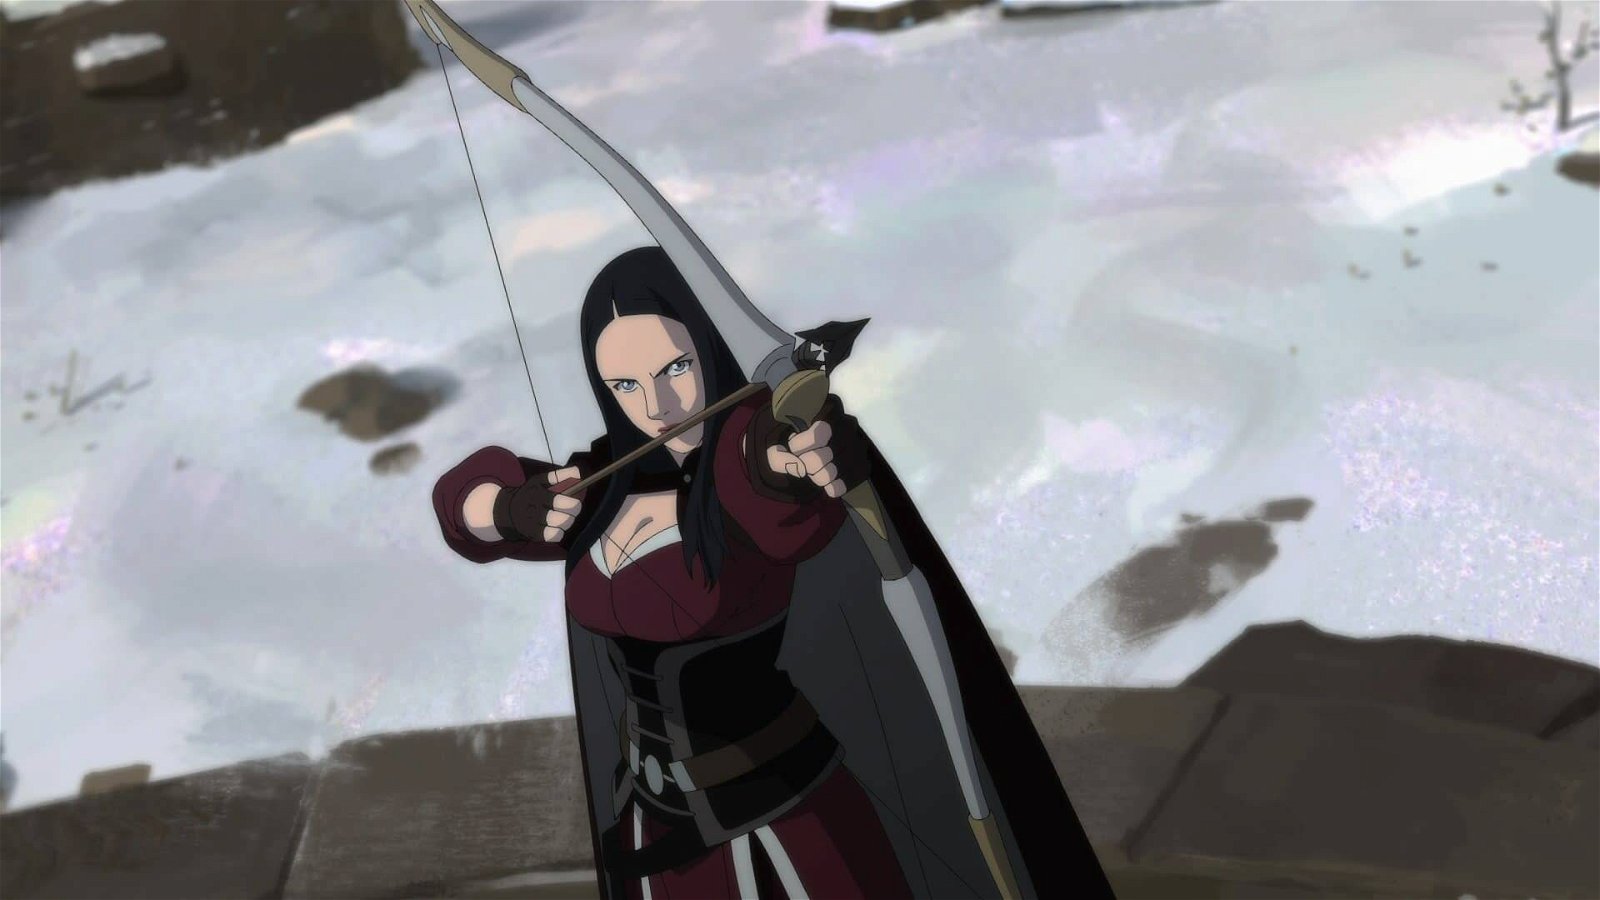 Immagine di The Witcher: arriva una nuova serie animata (per bambini)